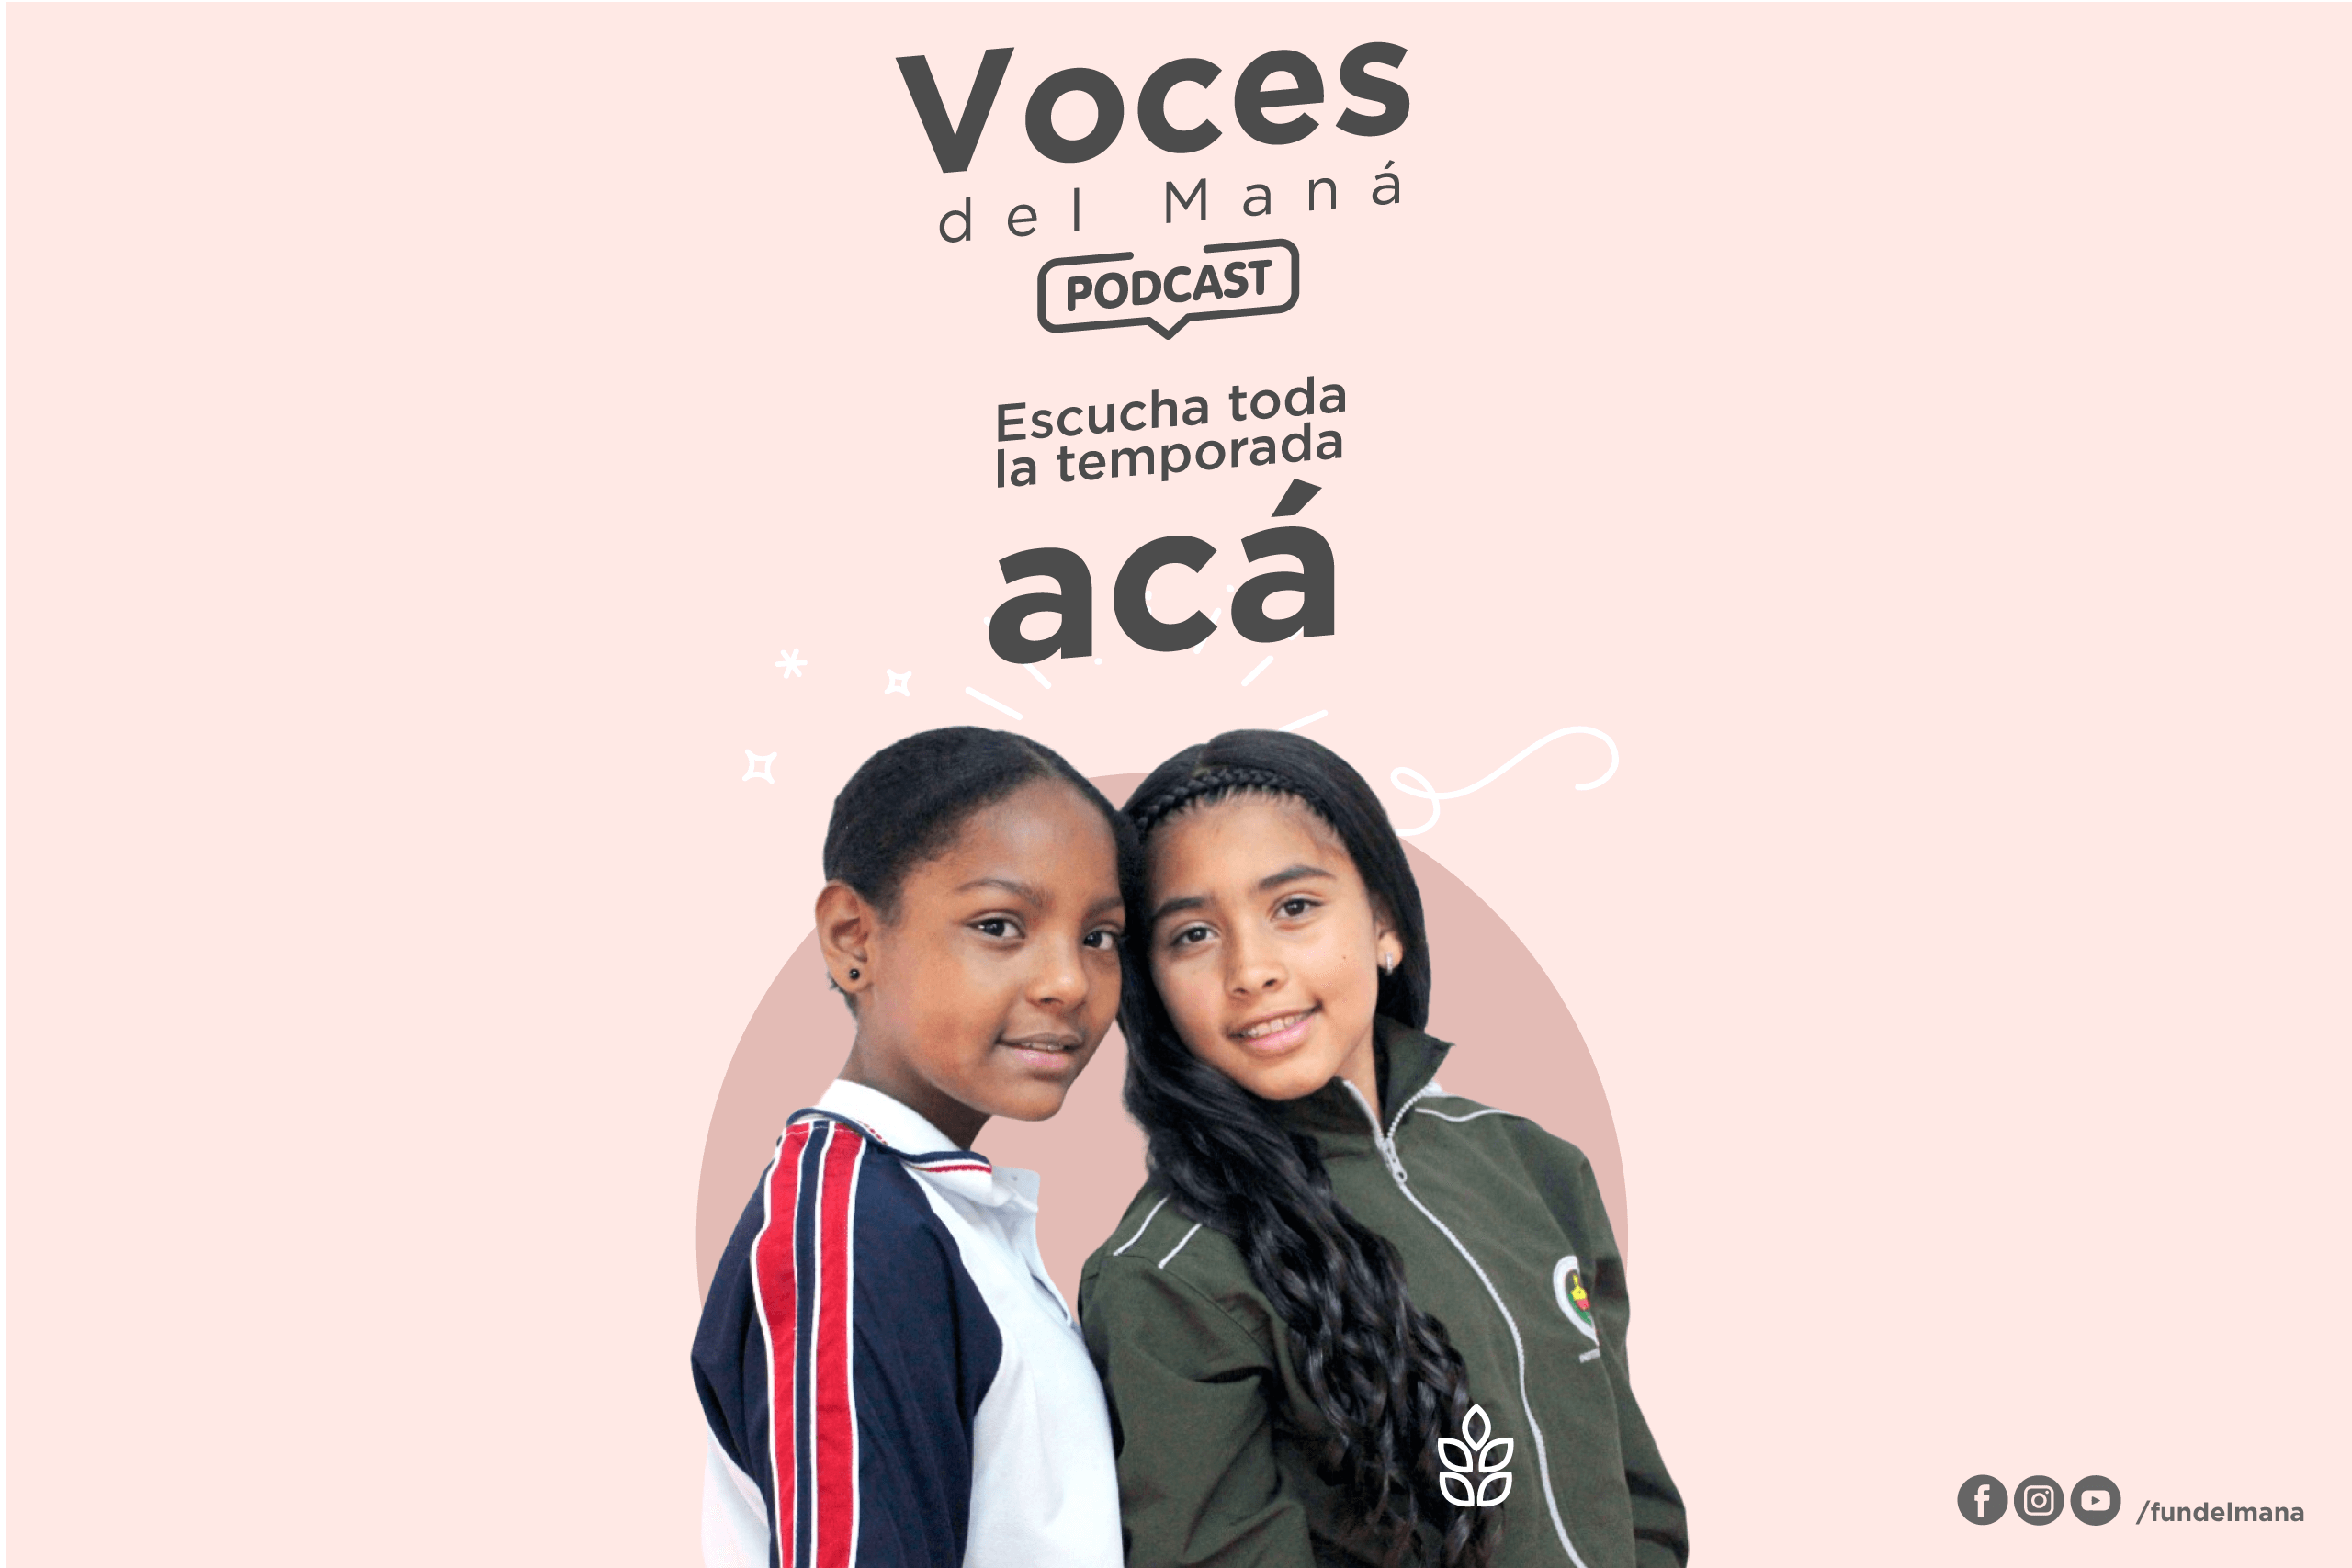 ¡Escucha nuestras Voces del Maná en Podcast!